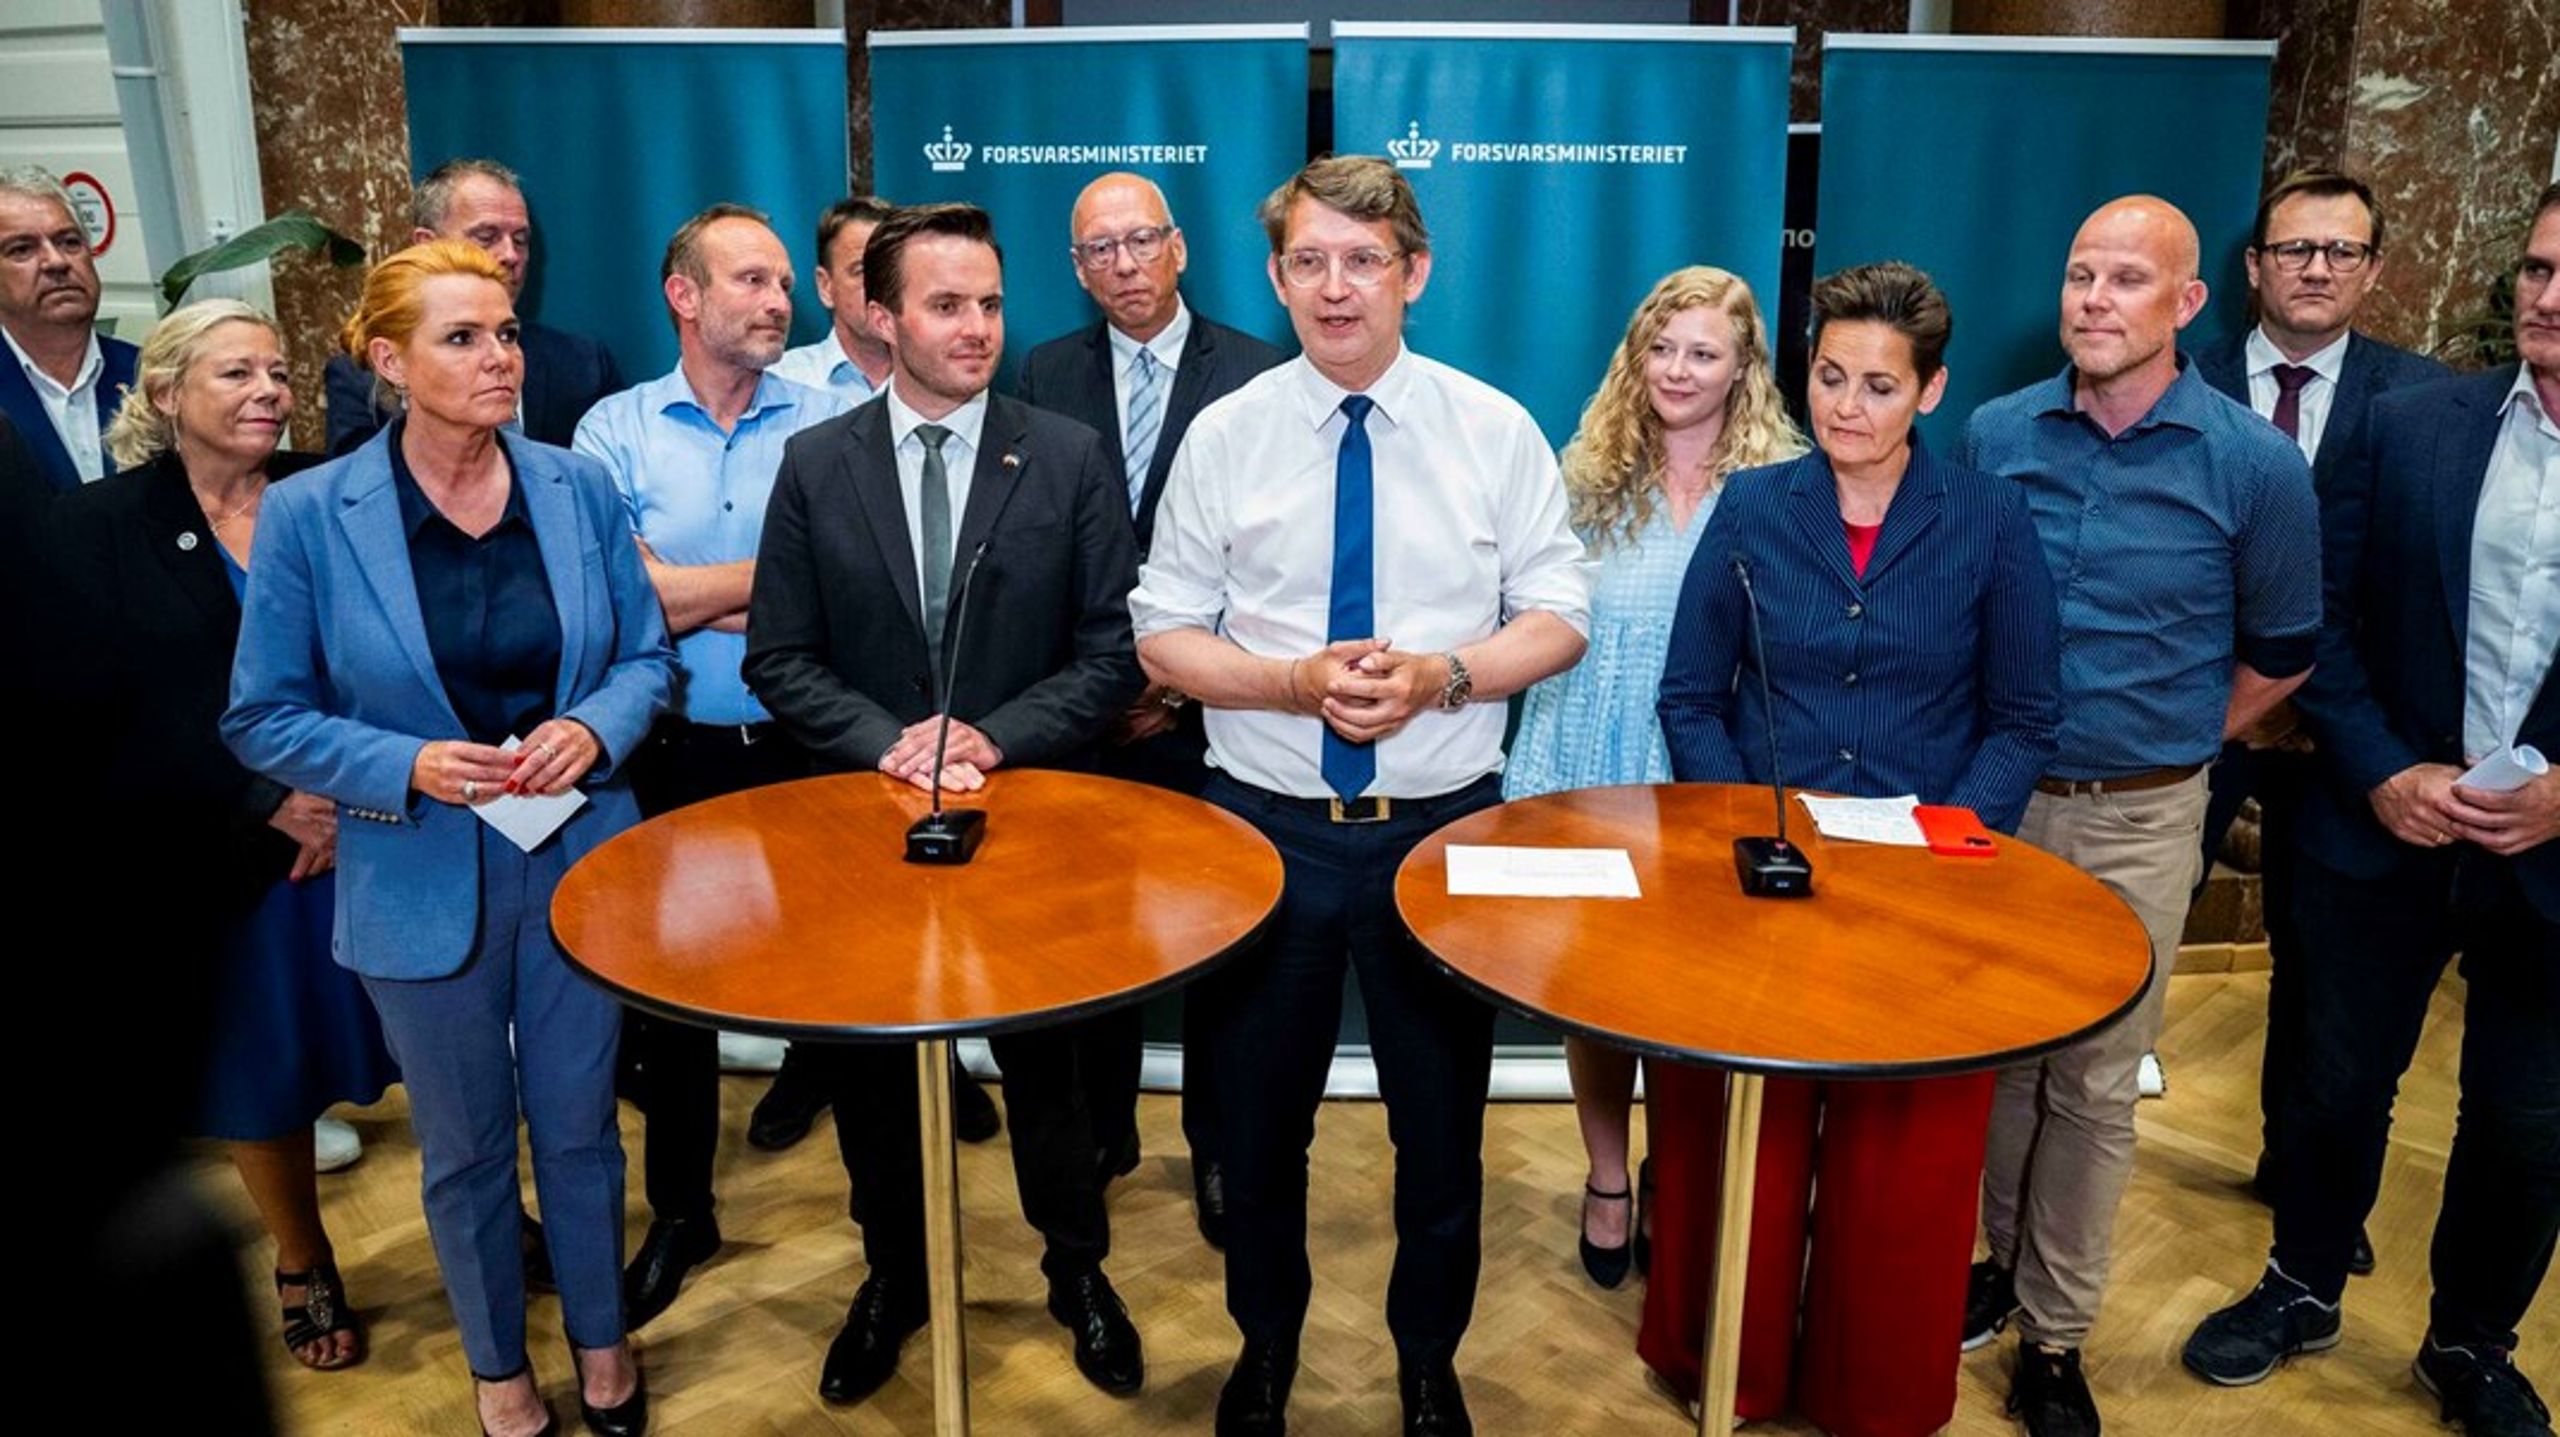 10 af Folketingets partier står bag det forsvarsforlig, som blev indgået i slutningen af juni og præsenteret af dengang fungerende forsvarsminister Troels Lund Poulsen samt partiledere og ordfører fra partierne.